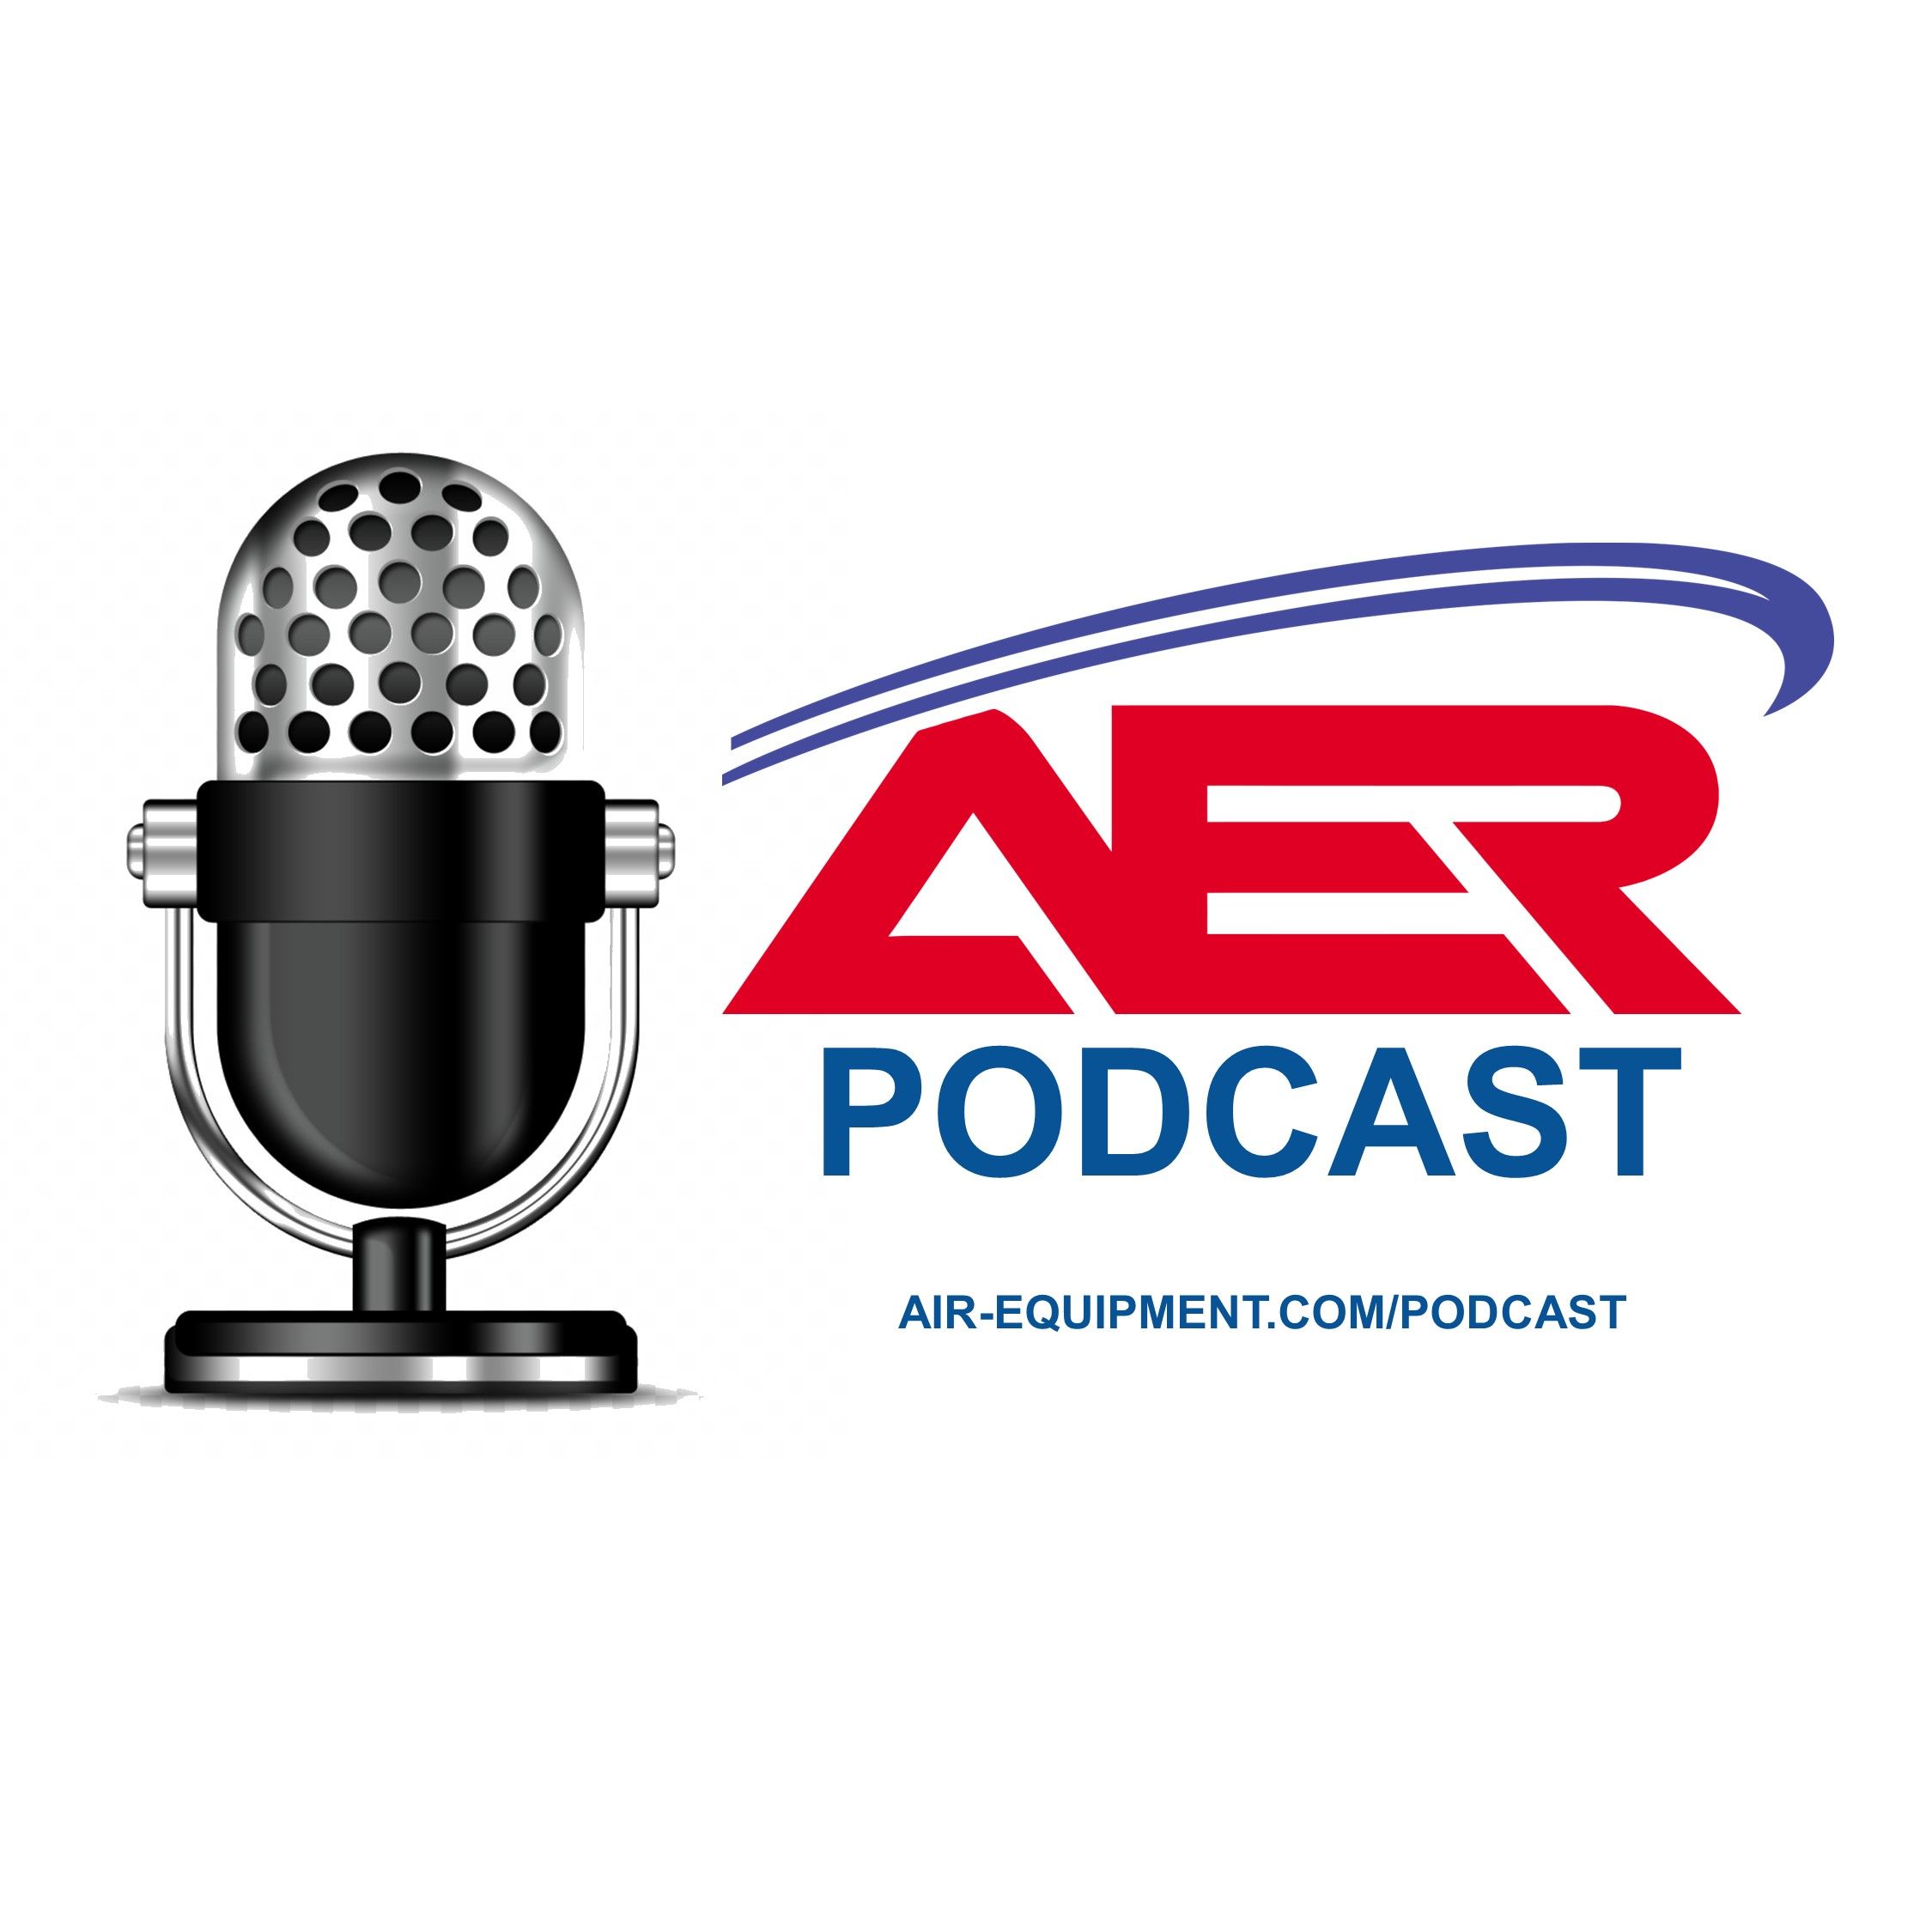 AER Podcast